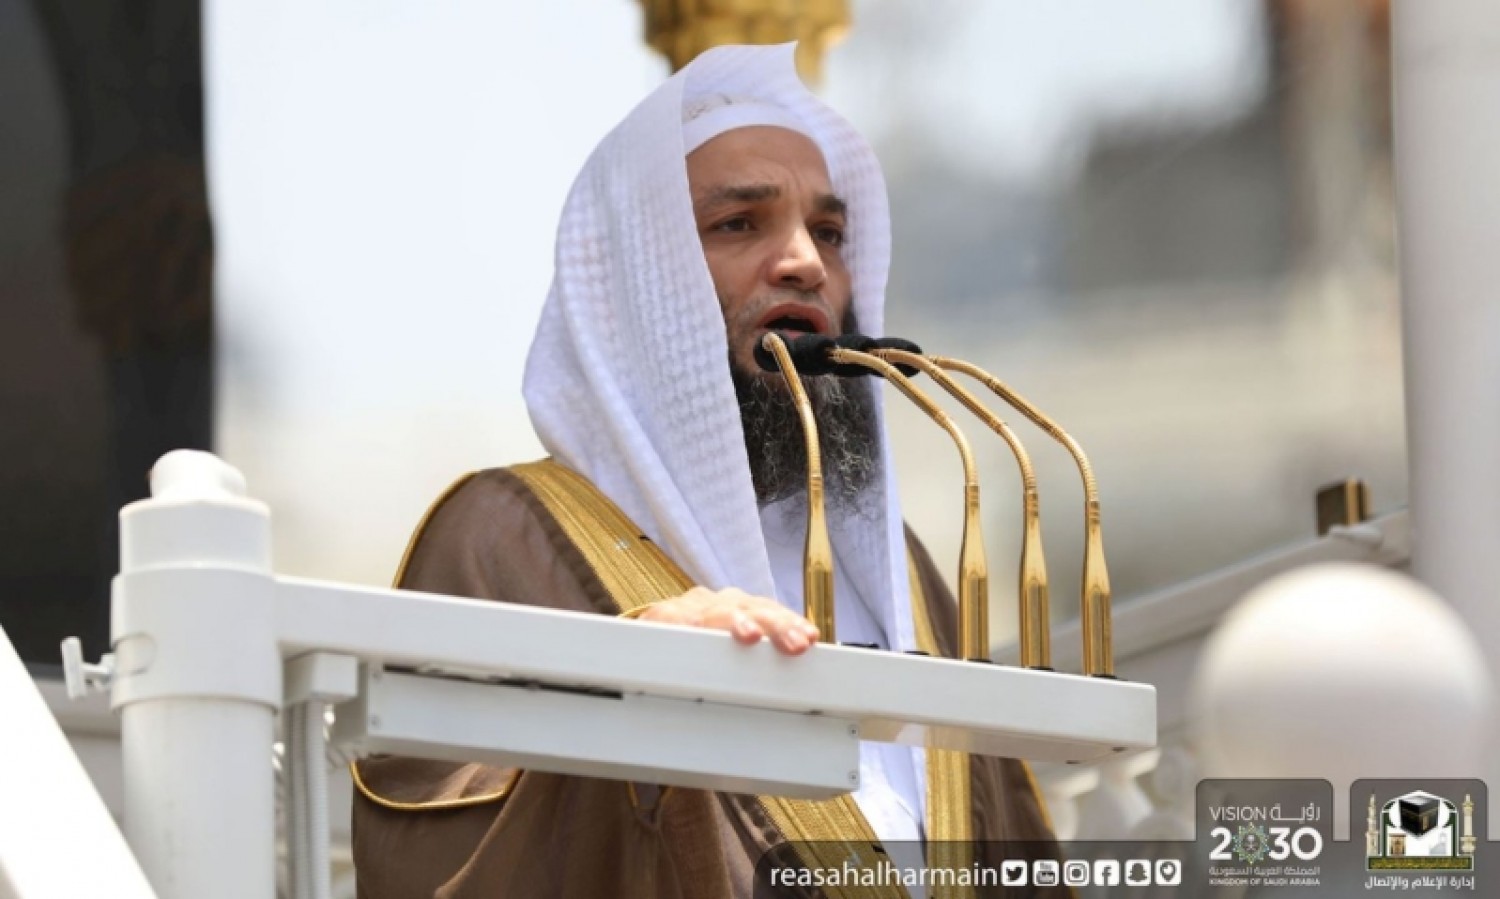 28 - الشيخ فيصل غزاوي في خطبة الجمعة: رمضان موسم المتصدقين وفرصة سانحة للباذلين والمعطين